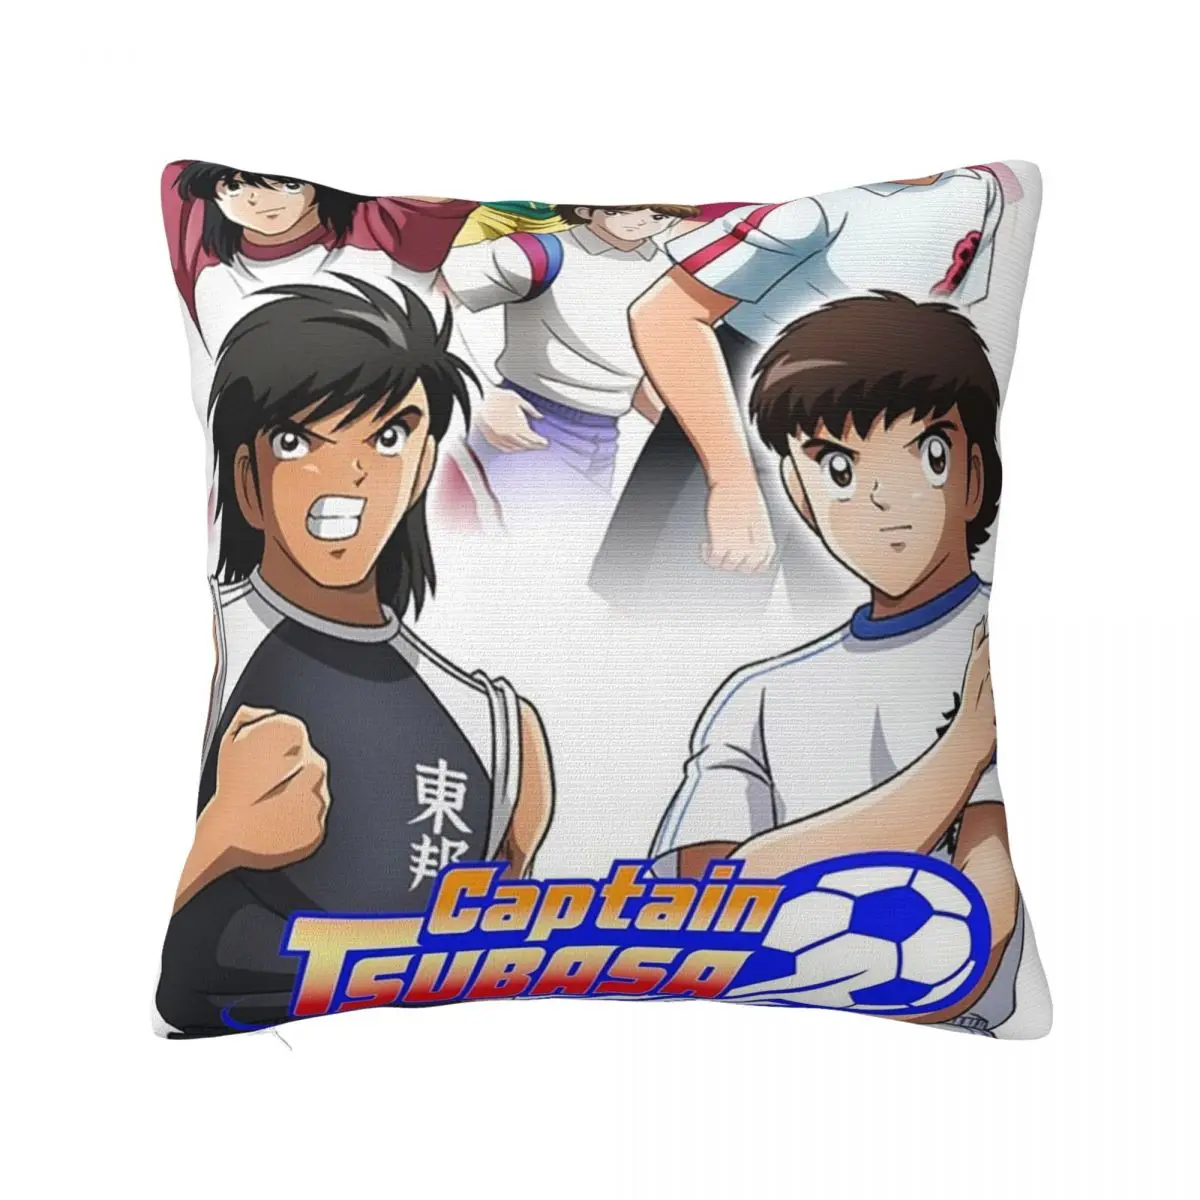 

Captain Tsubasa Anime Pillowcase Printed Polyester Cushion Cover cartoon young football player Pillow Case Cover Home 40X40cm